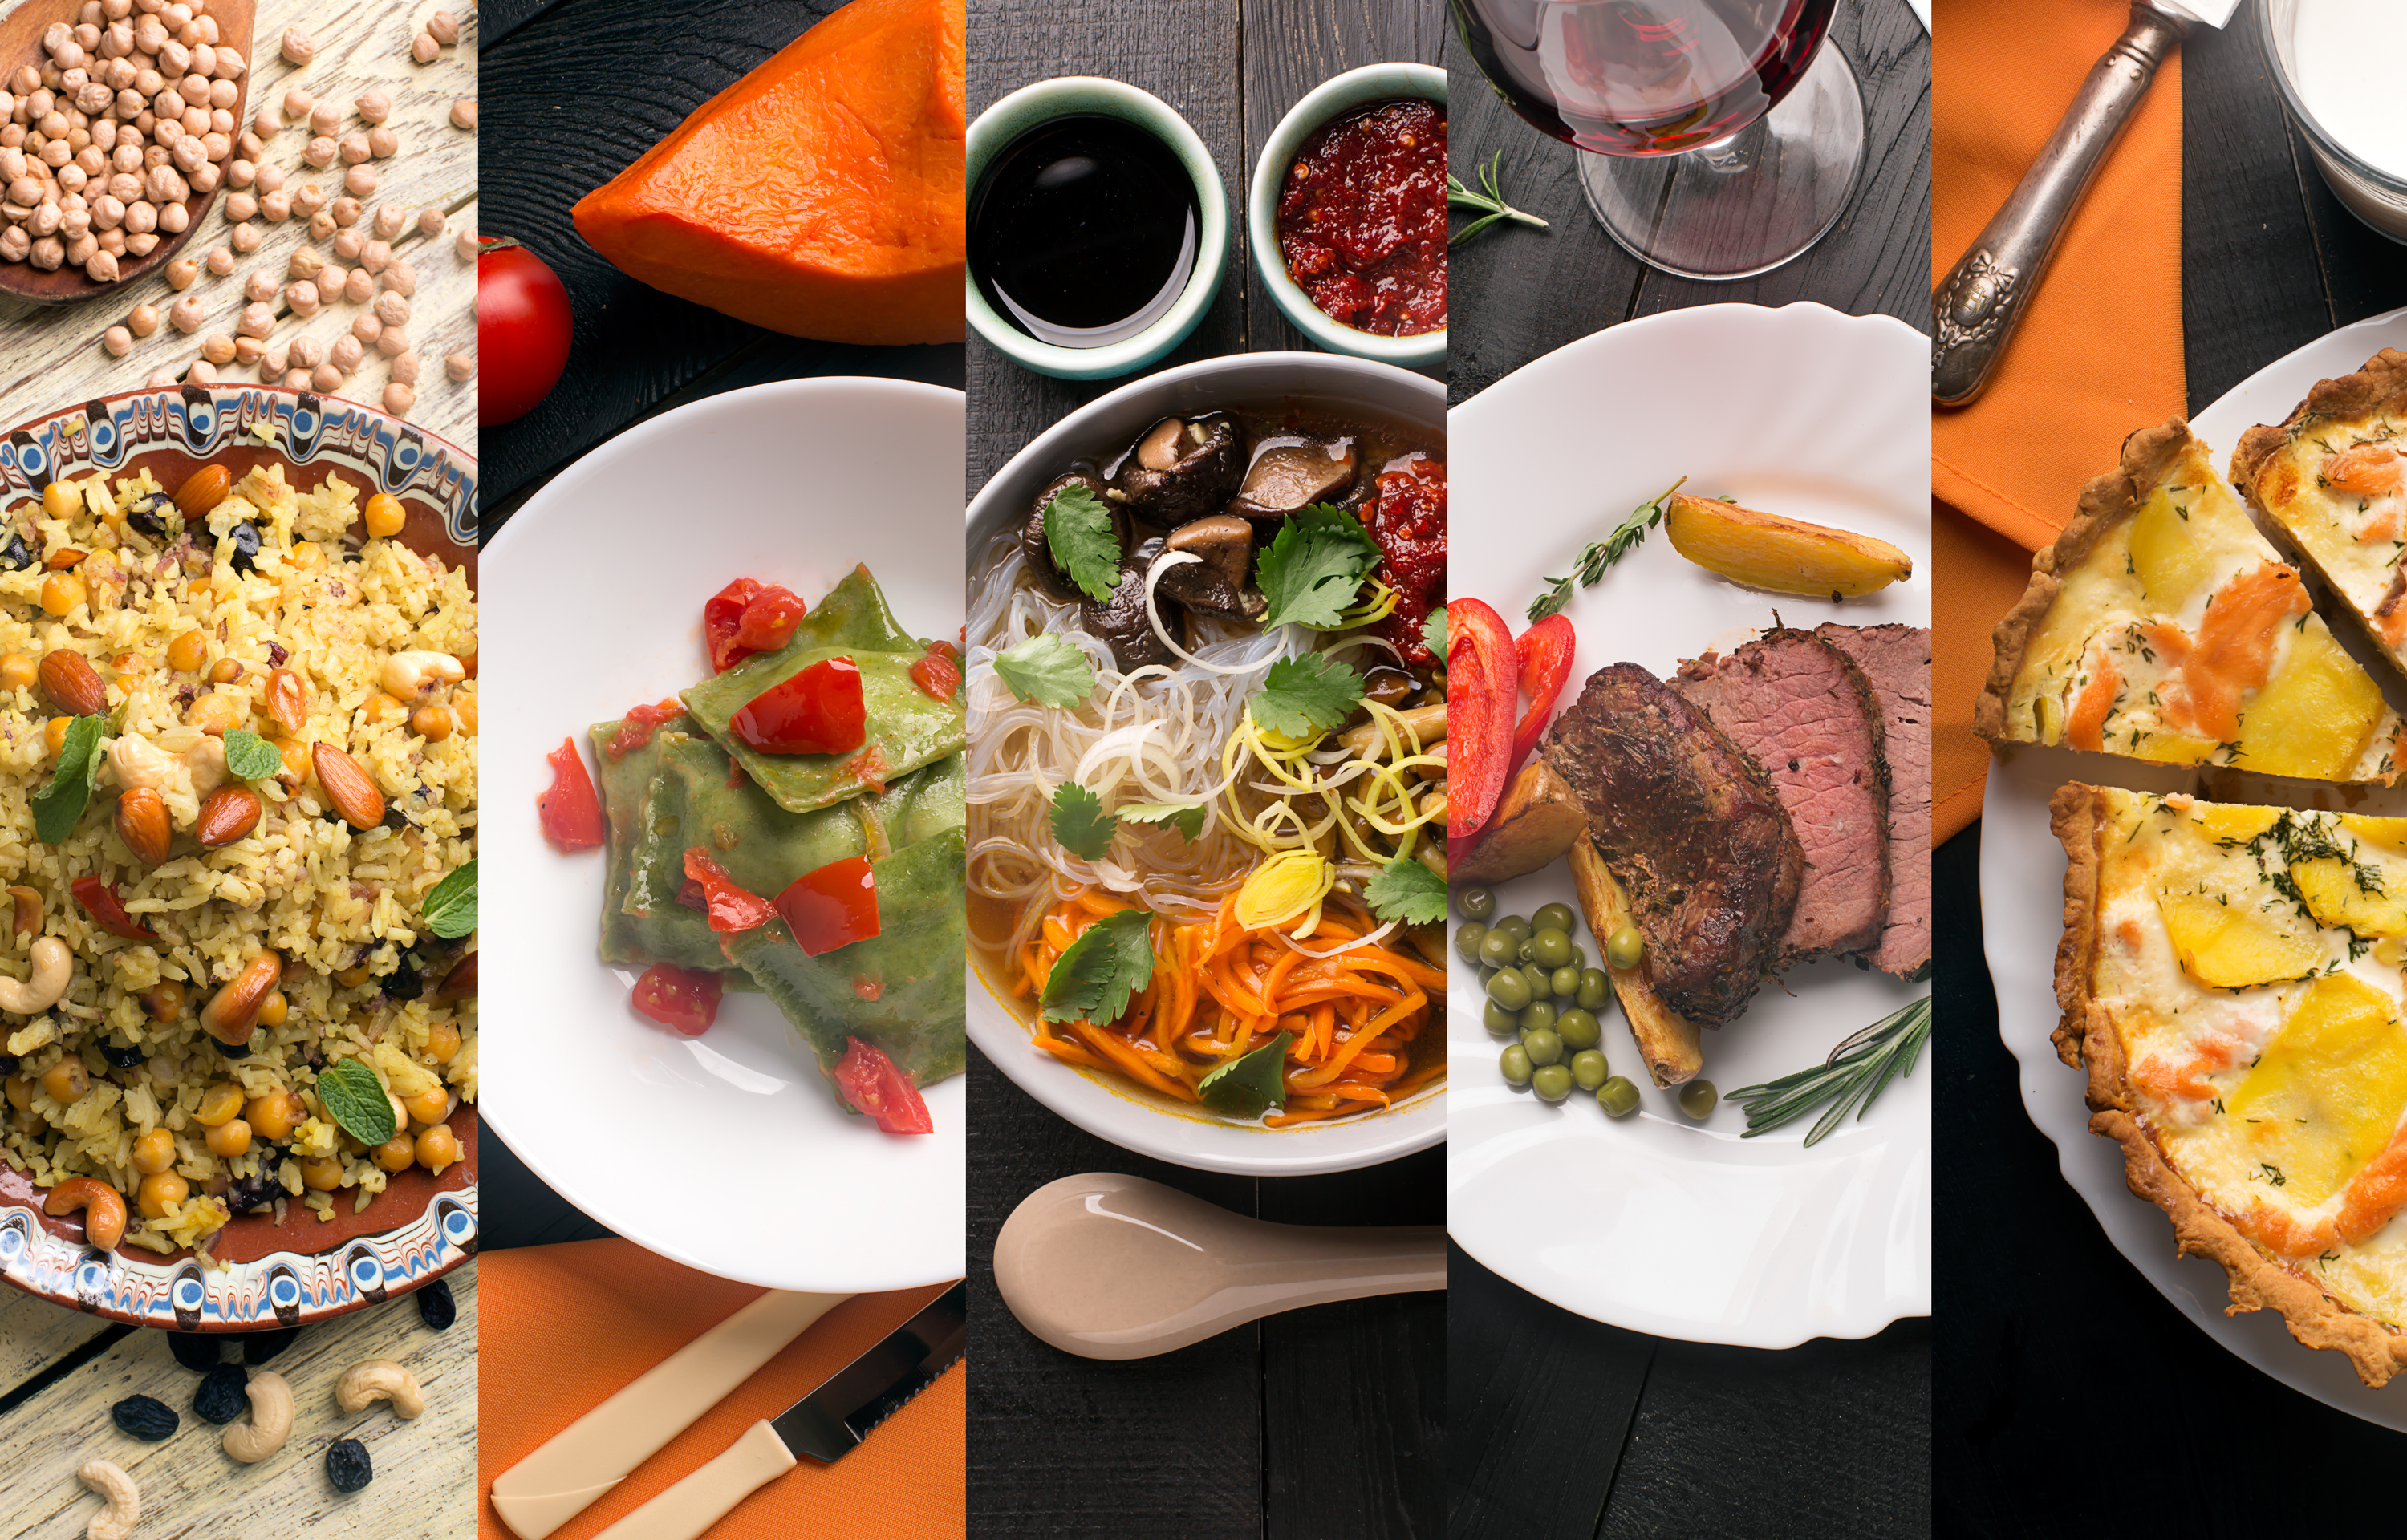 36 Top Pictures Cocina Y Gastronomia / Trabajo en Canadá para profesionales de Gastronomía y ...